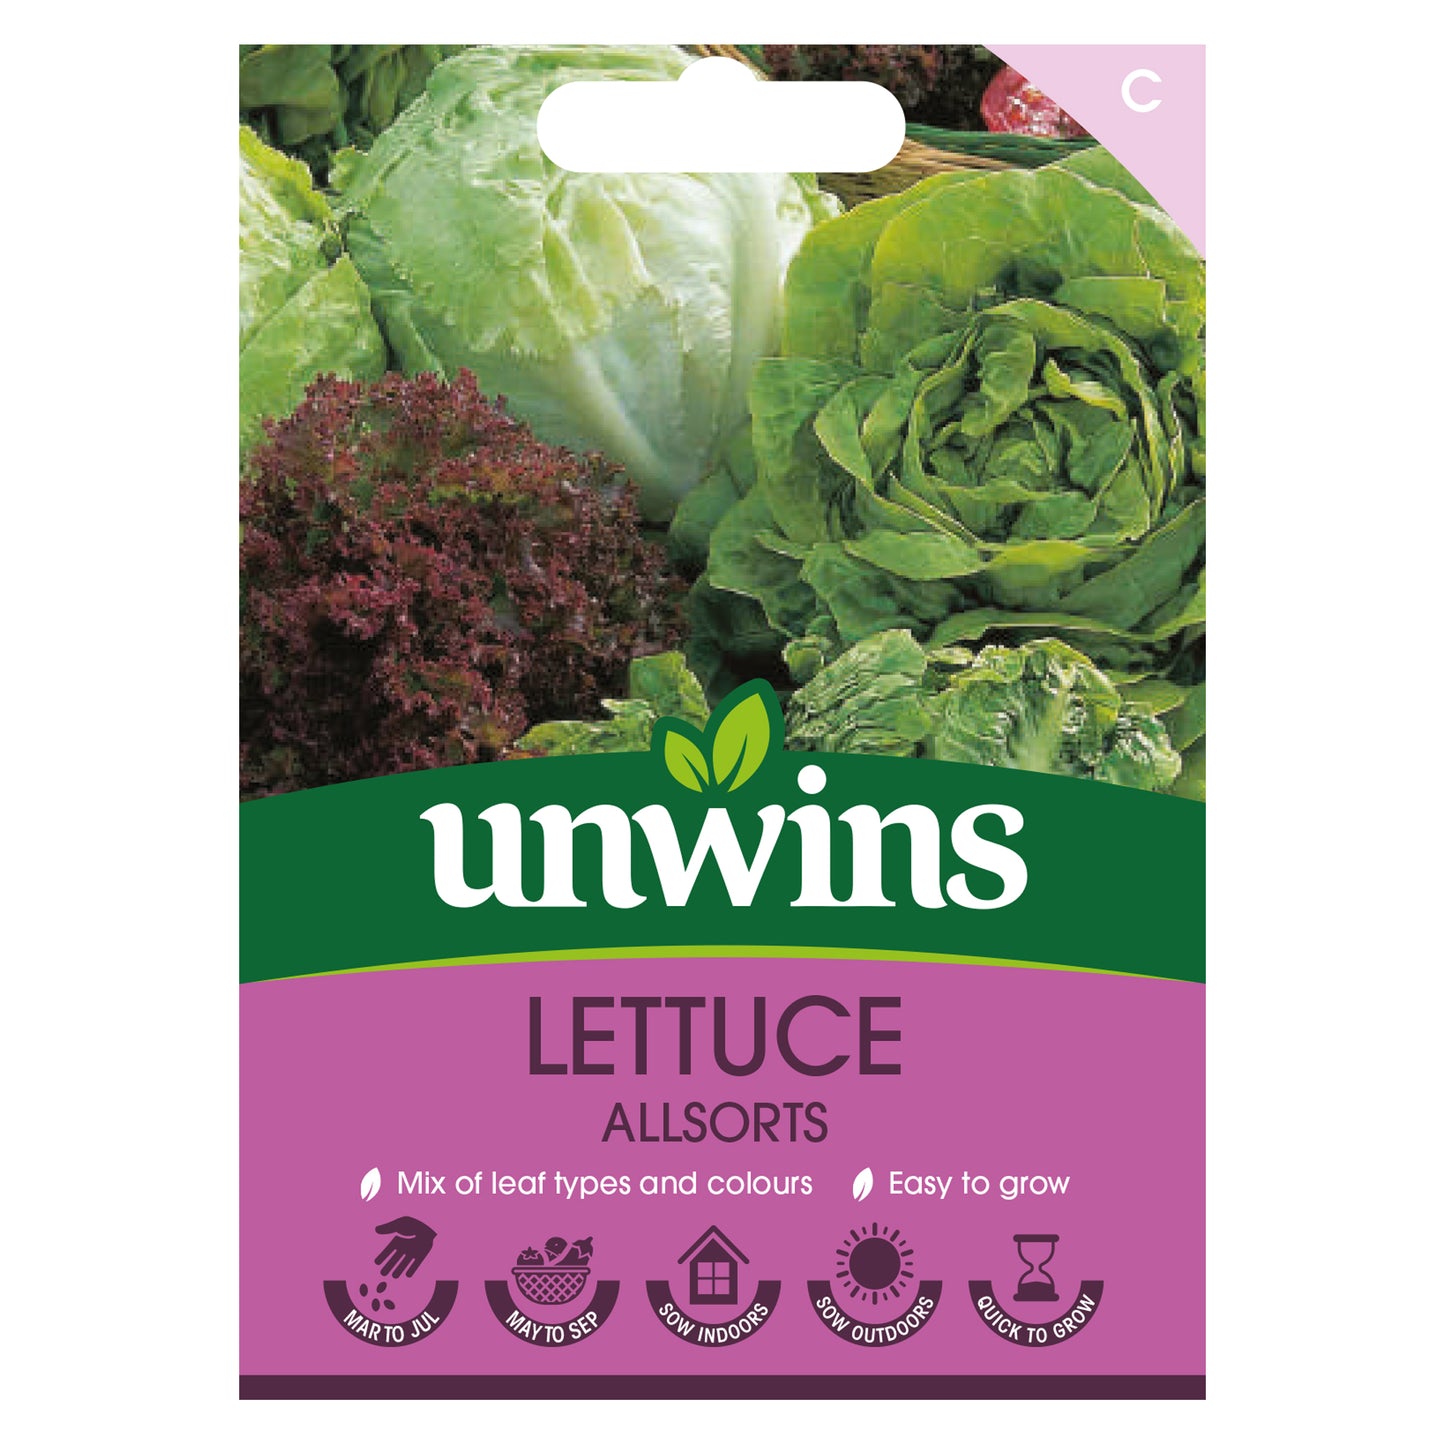 Unwins Lettuce Allsorts Seeds front of pack